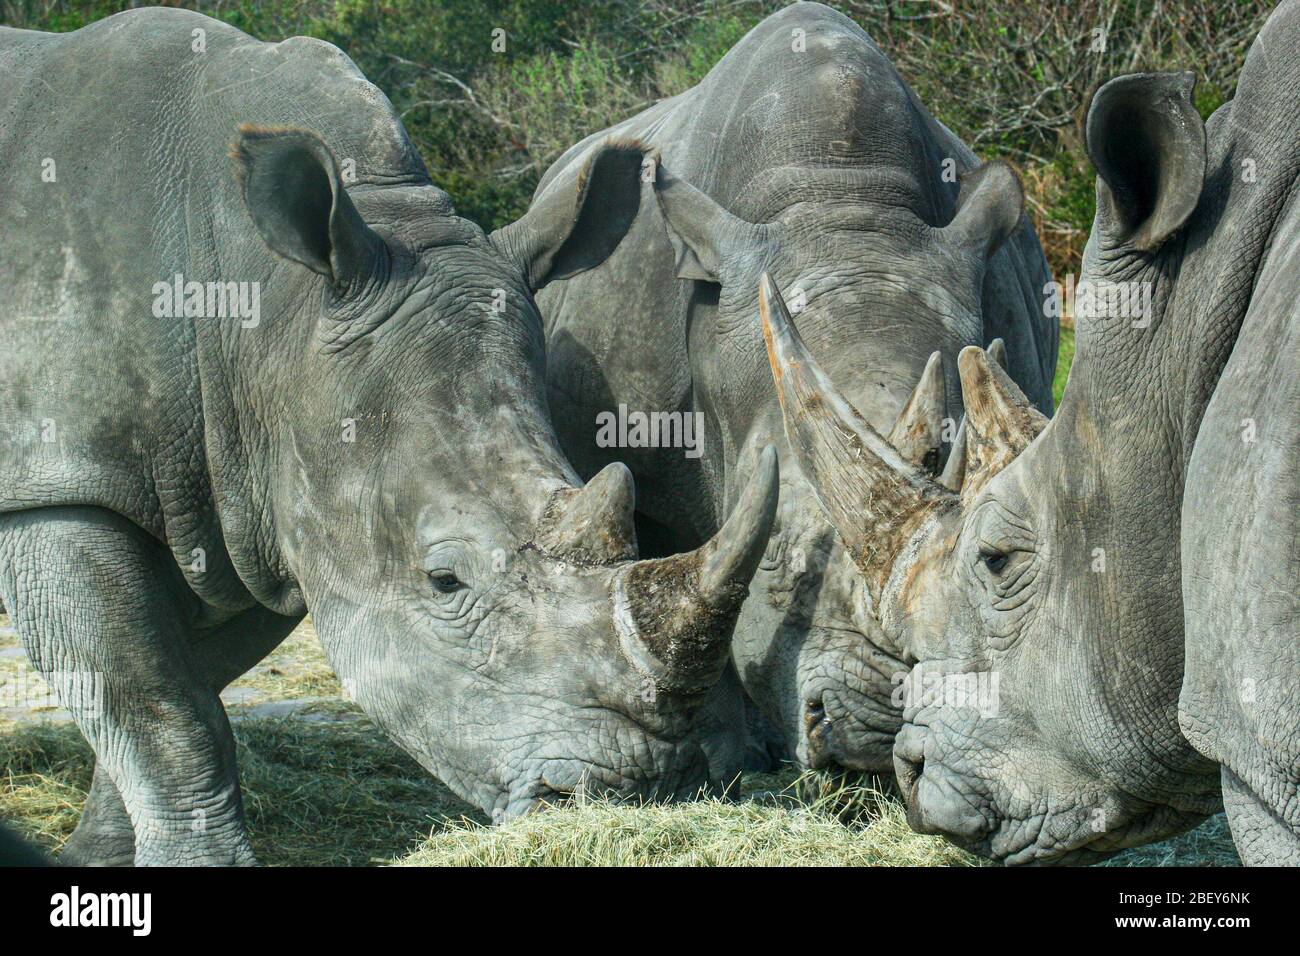 rinoceronti affamati che mangiano durante il periodo di alimentazione Foto Stock